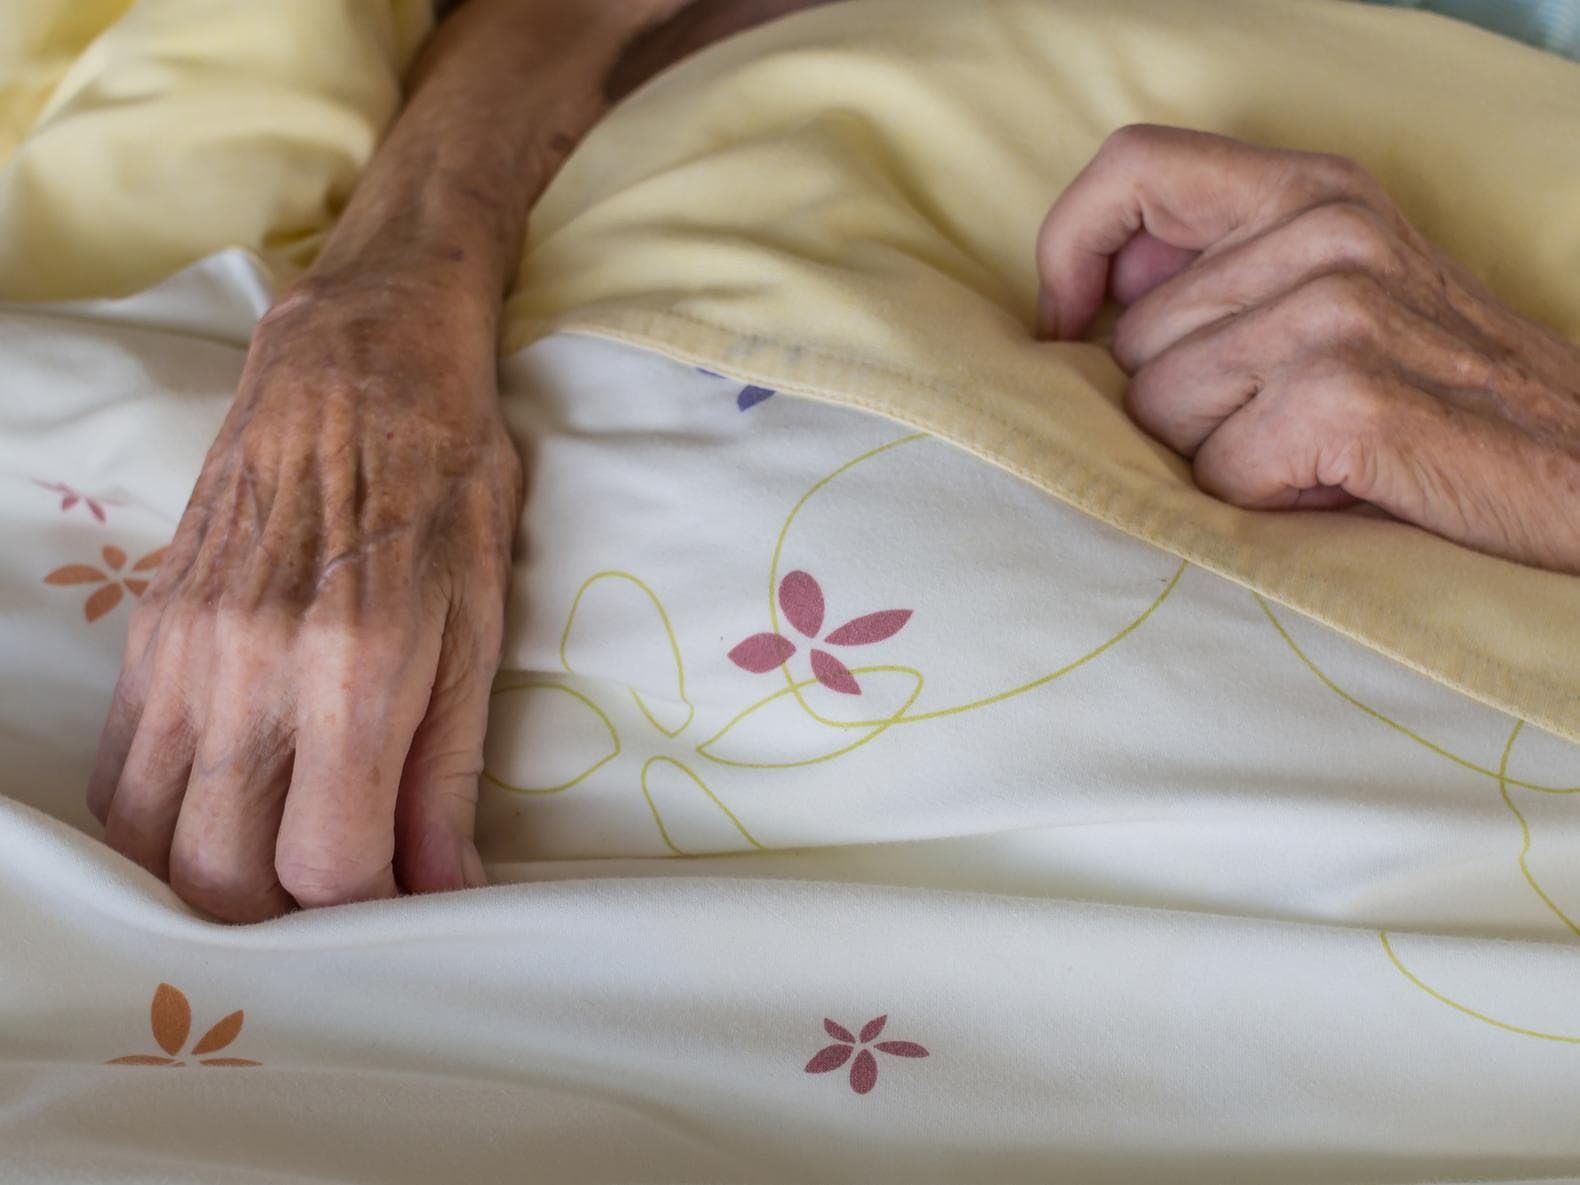 Verzorgers rusthuis in Puurs schuldig aan onterende behandeling bejaarden na delen van naaktbeelden